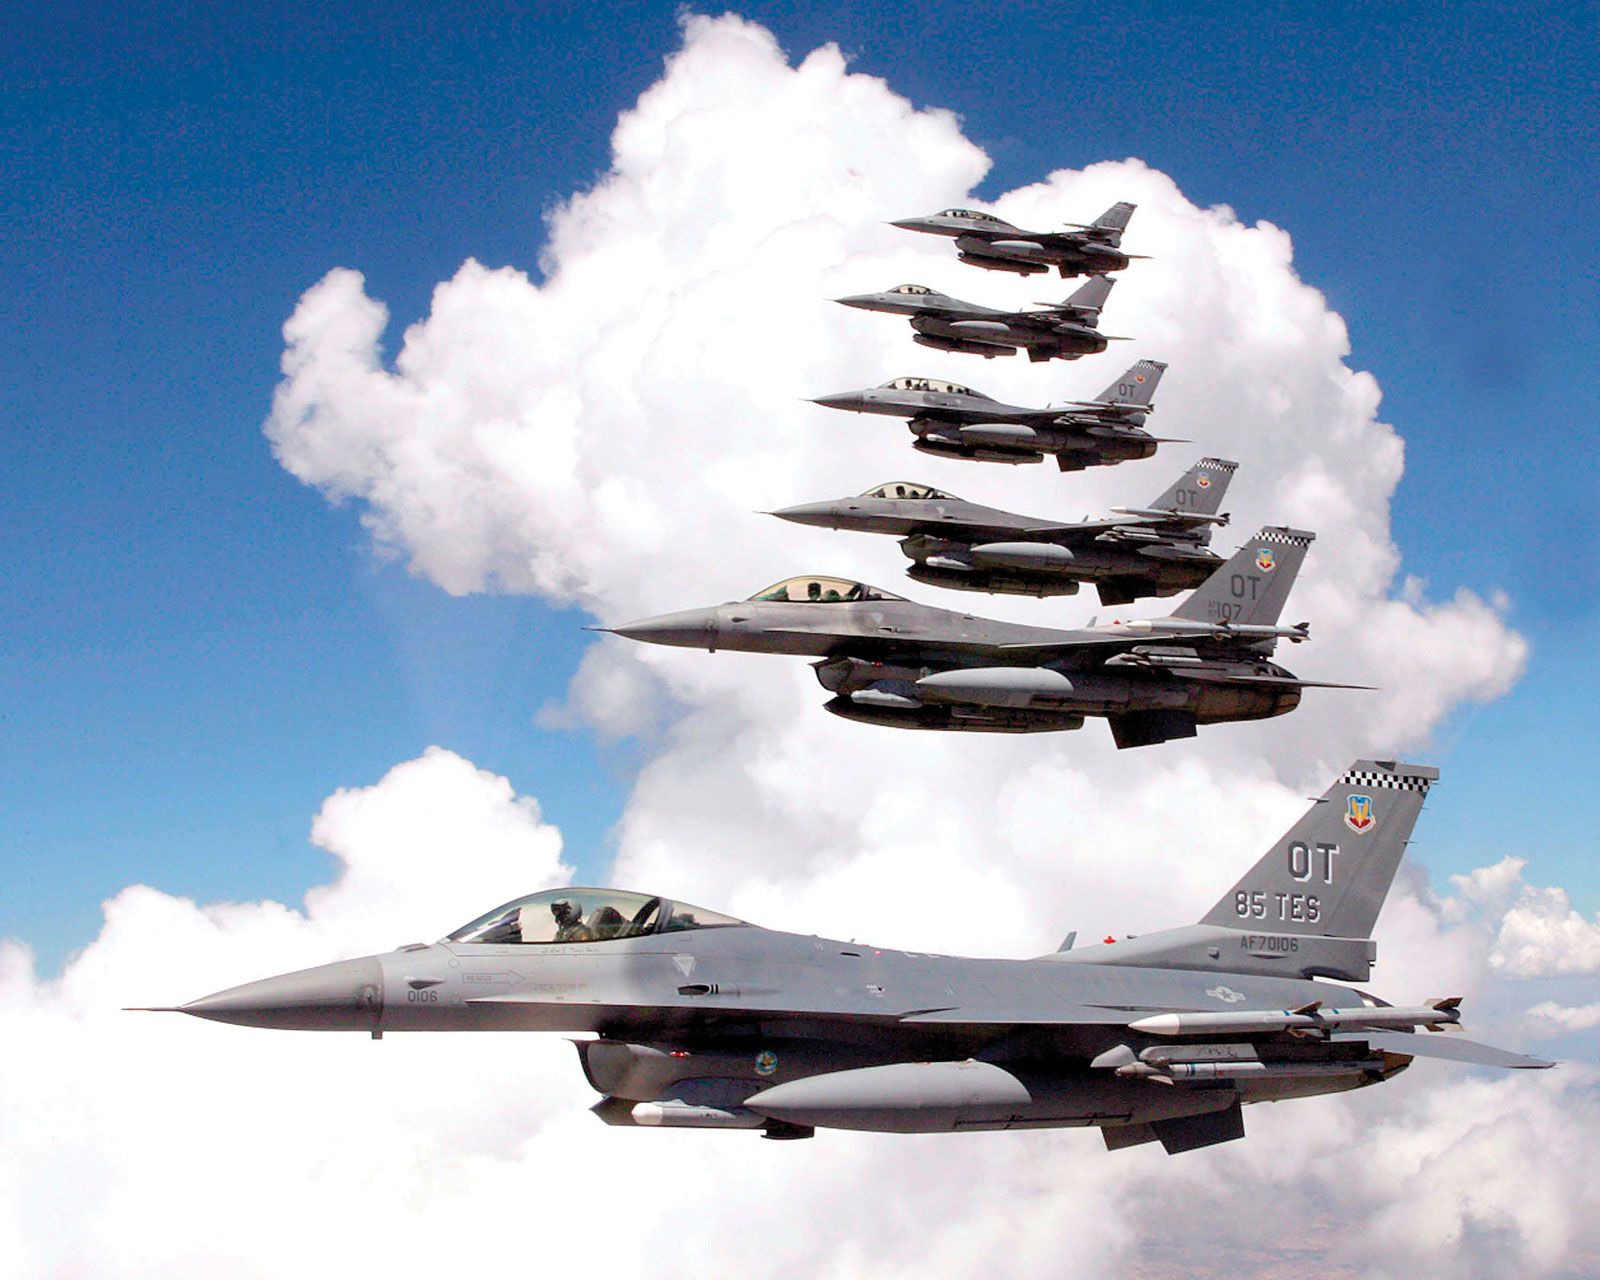 Voice of America: українські пілоти почнуть навчатися на винищувачах F-16 Fighting Falcon цього літа, перша група складатиметься з 24 осіб